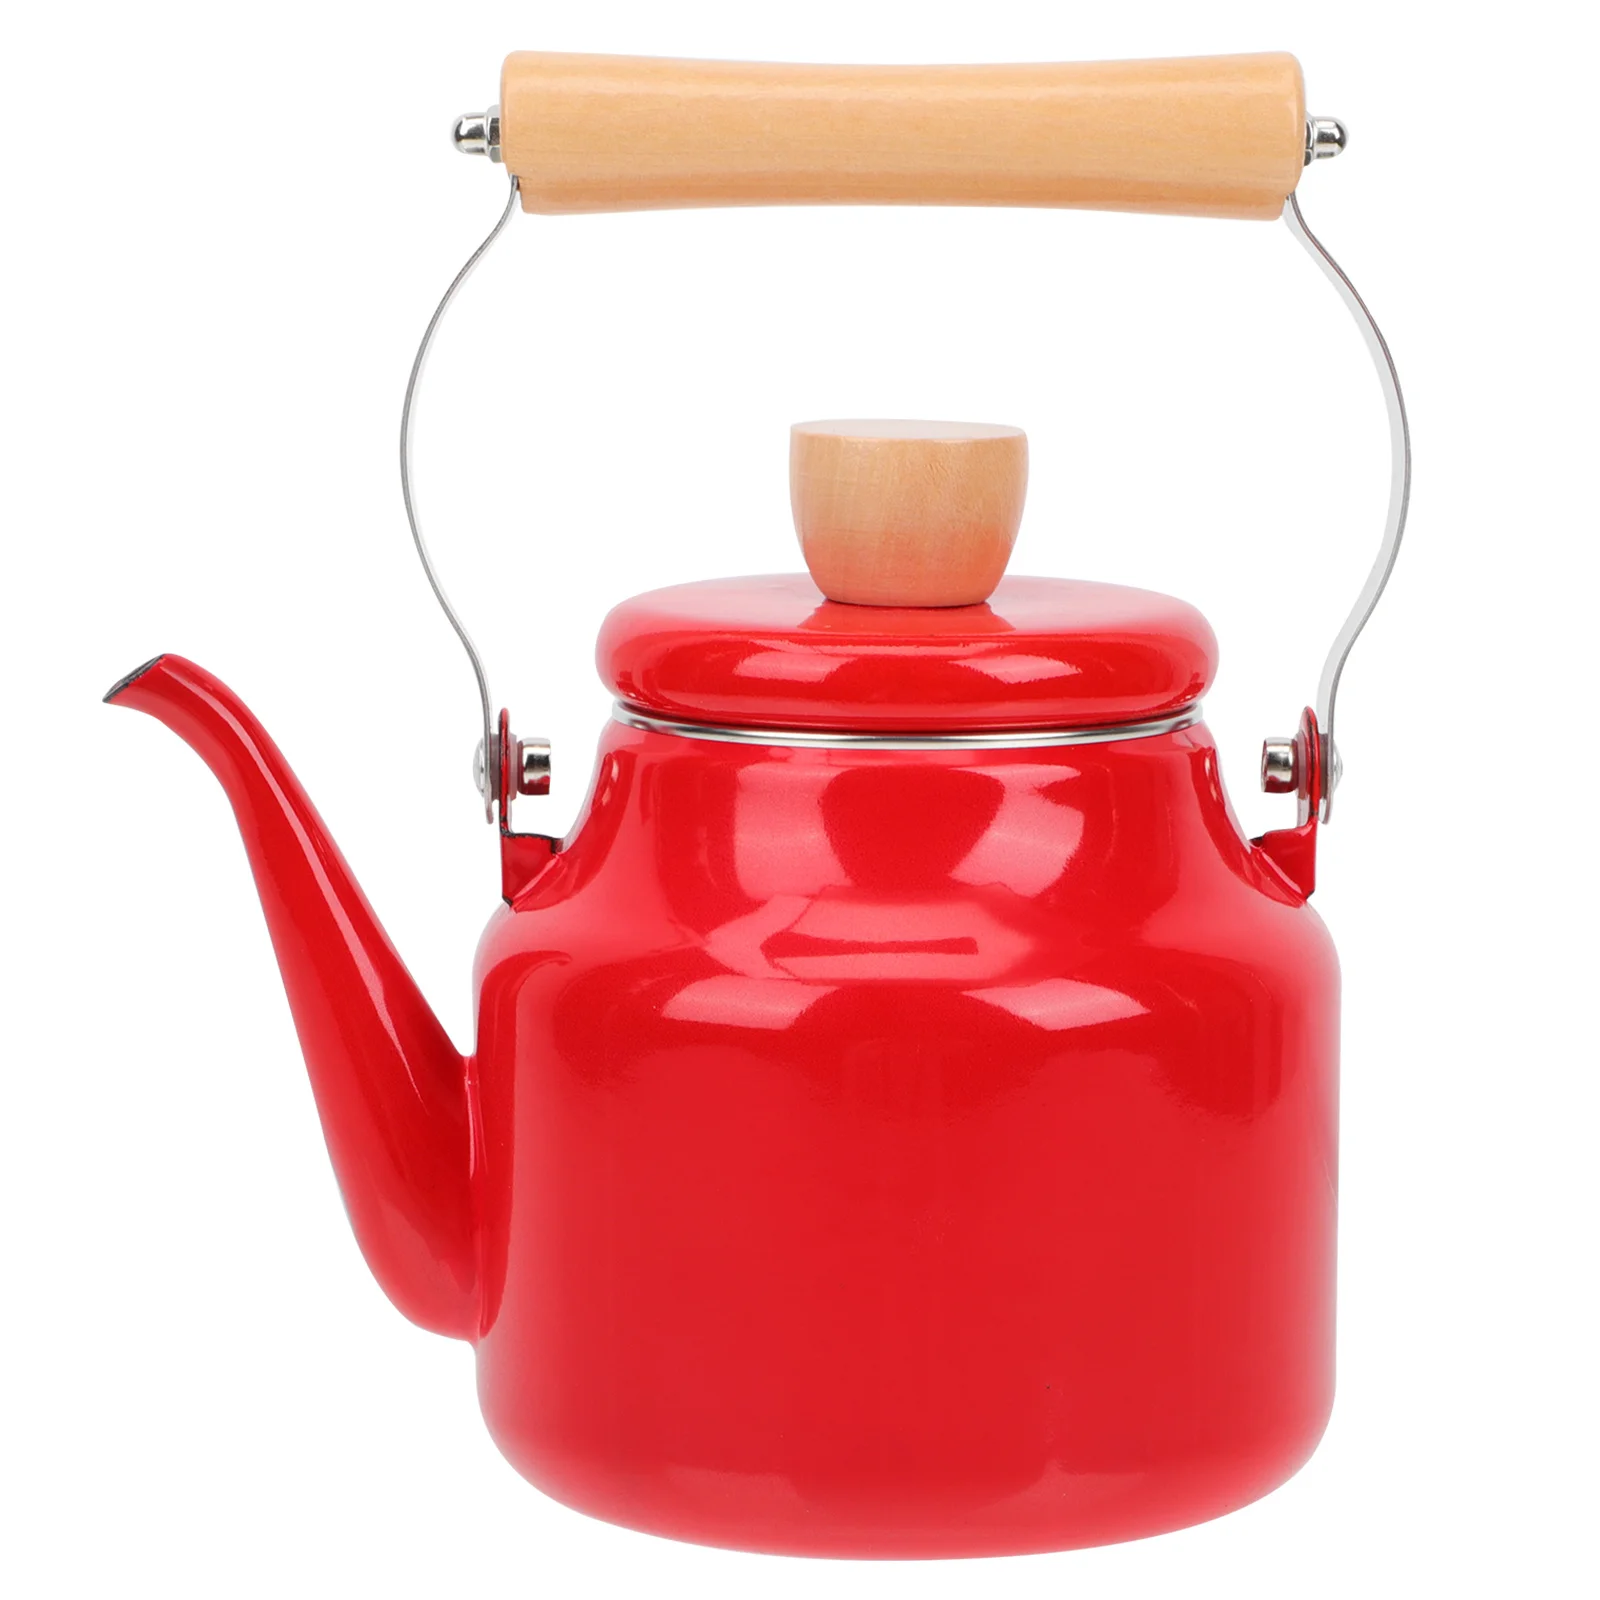 

Эмалированный чайник для воды объемом 1,5 л, чайник для нагрева чая, плита, чайник для кипячения кофе, чайник для индукционной плиты, газовая плита, кухонные принадлежности